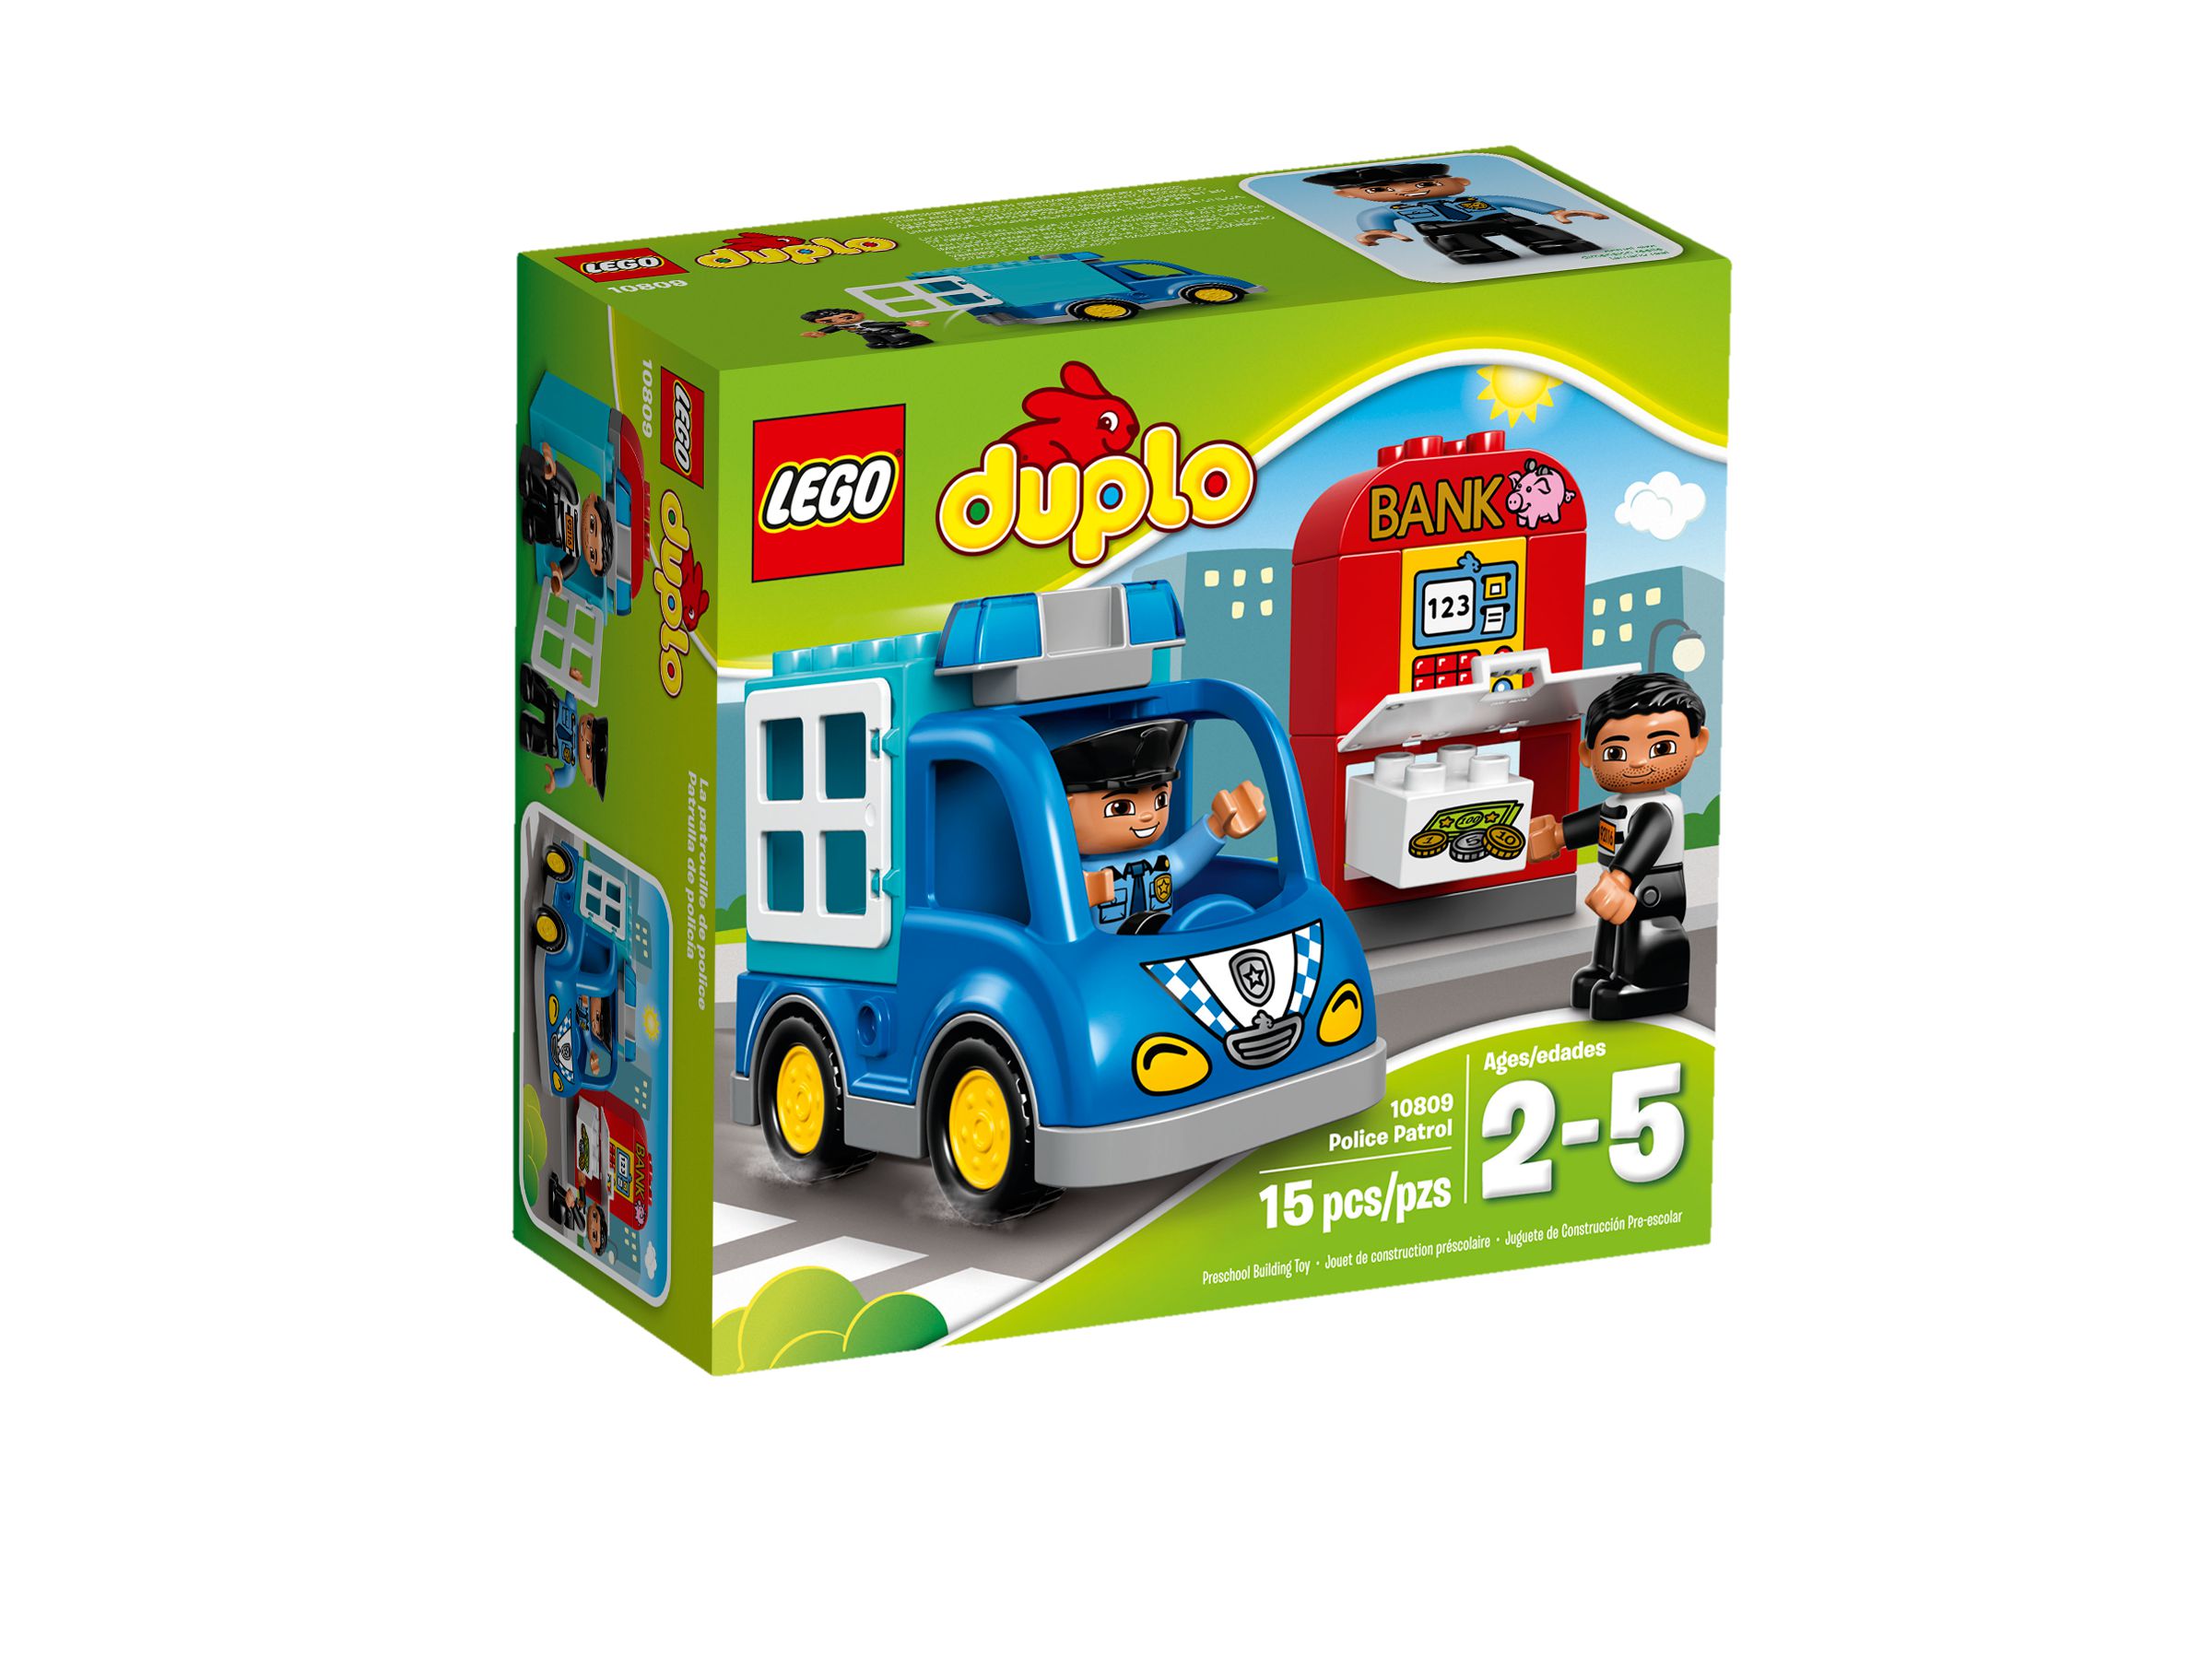 LEGO Duplo 10809 Polizeistreife LEGO_10809_alt1.jpg